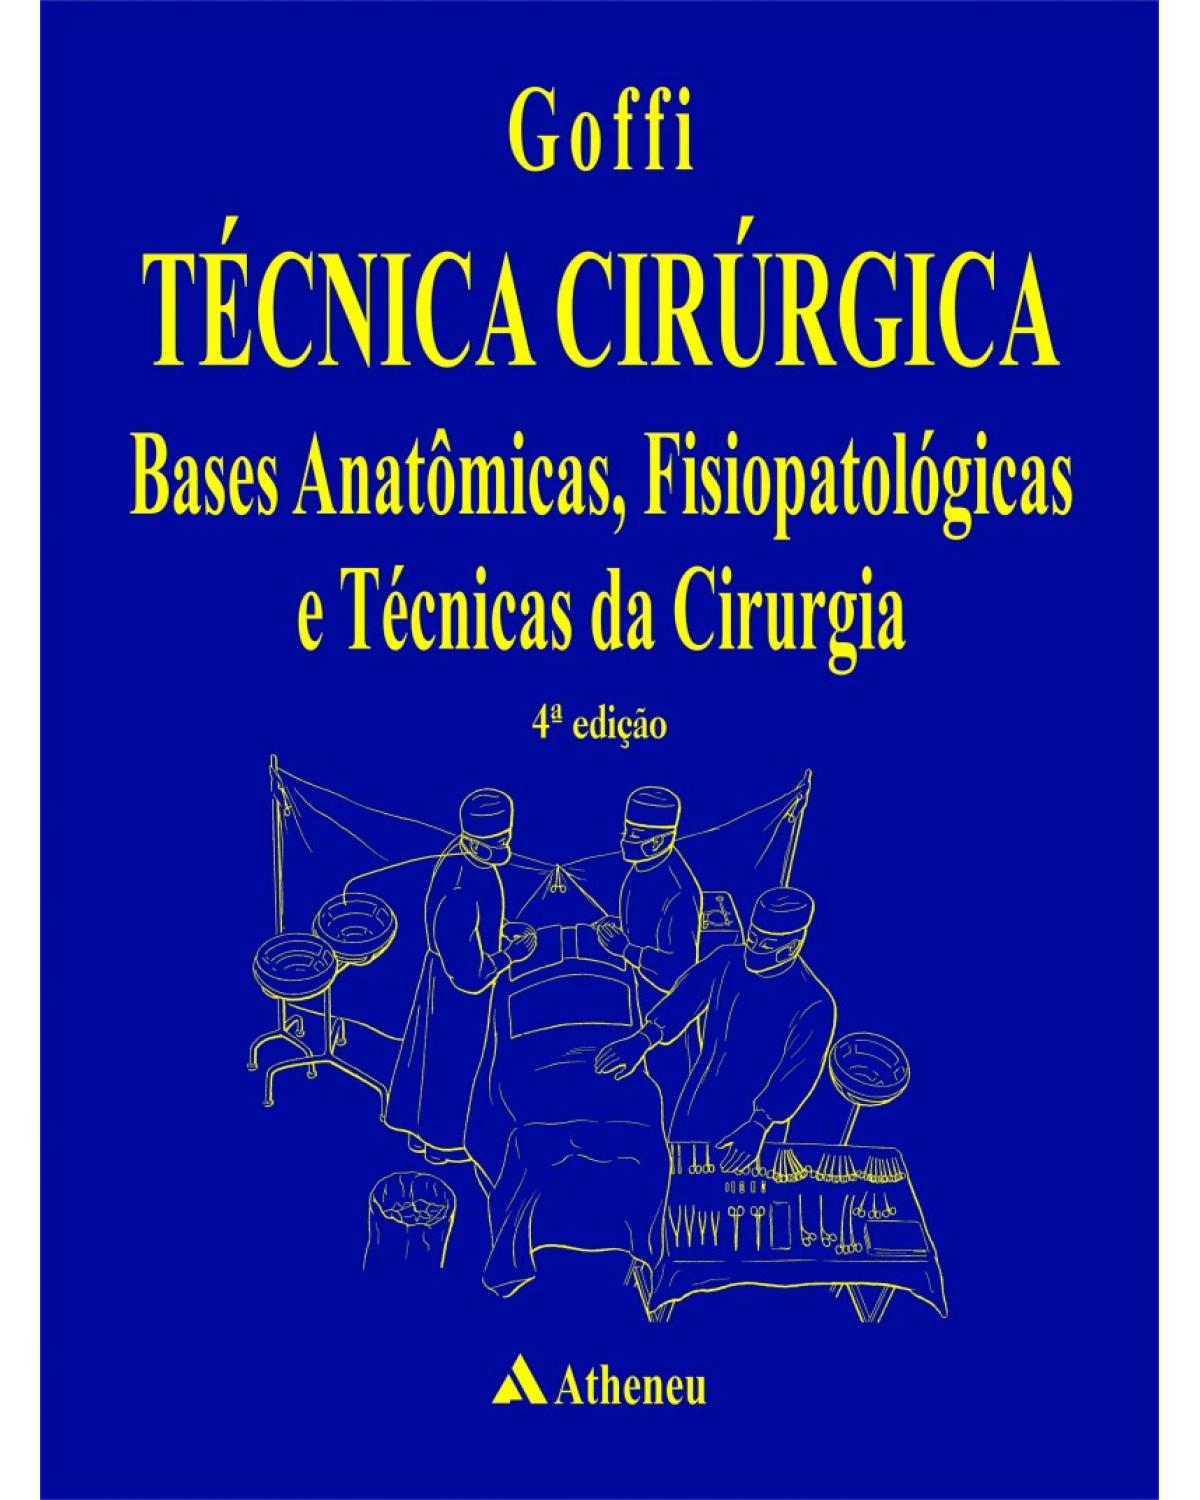 Técnica cirúrgica - Bases anatômicas, fisiopatológicas e técnicas da cirurgia - 4ª Edição | 2004